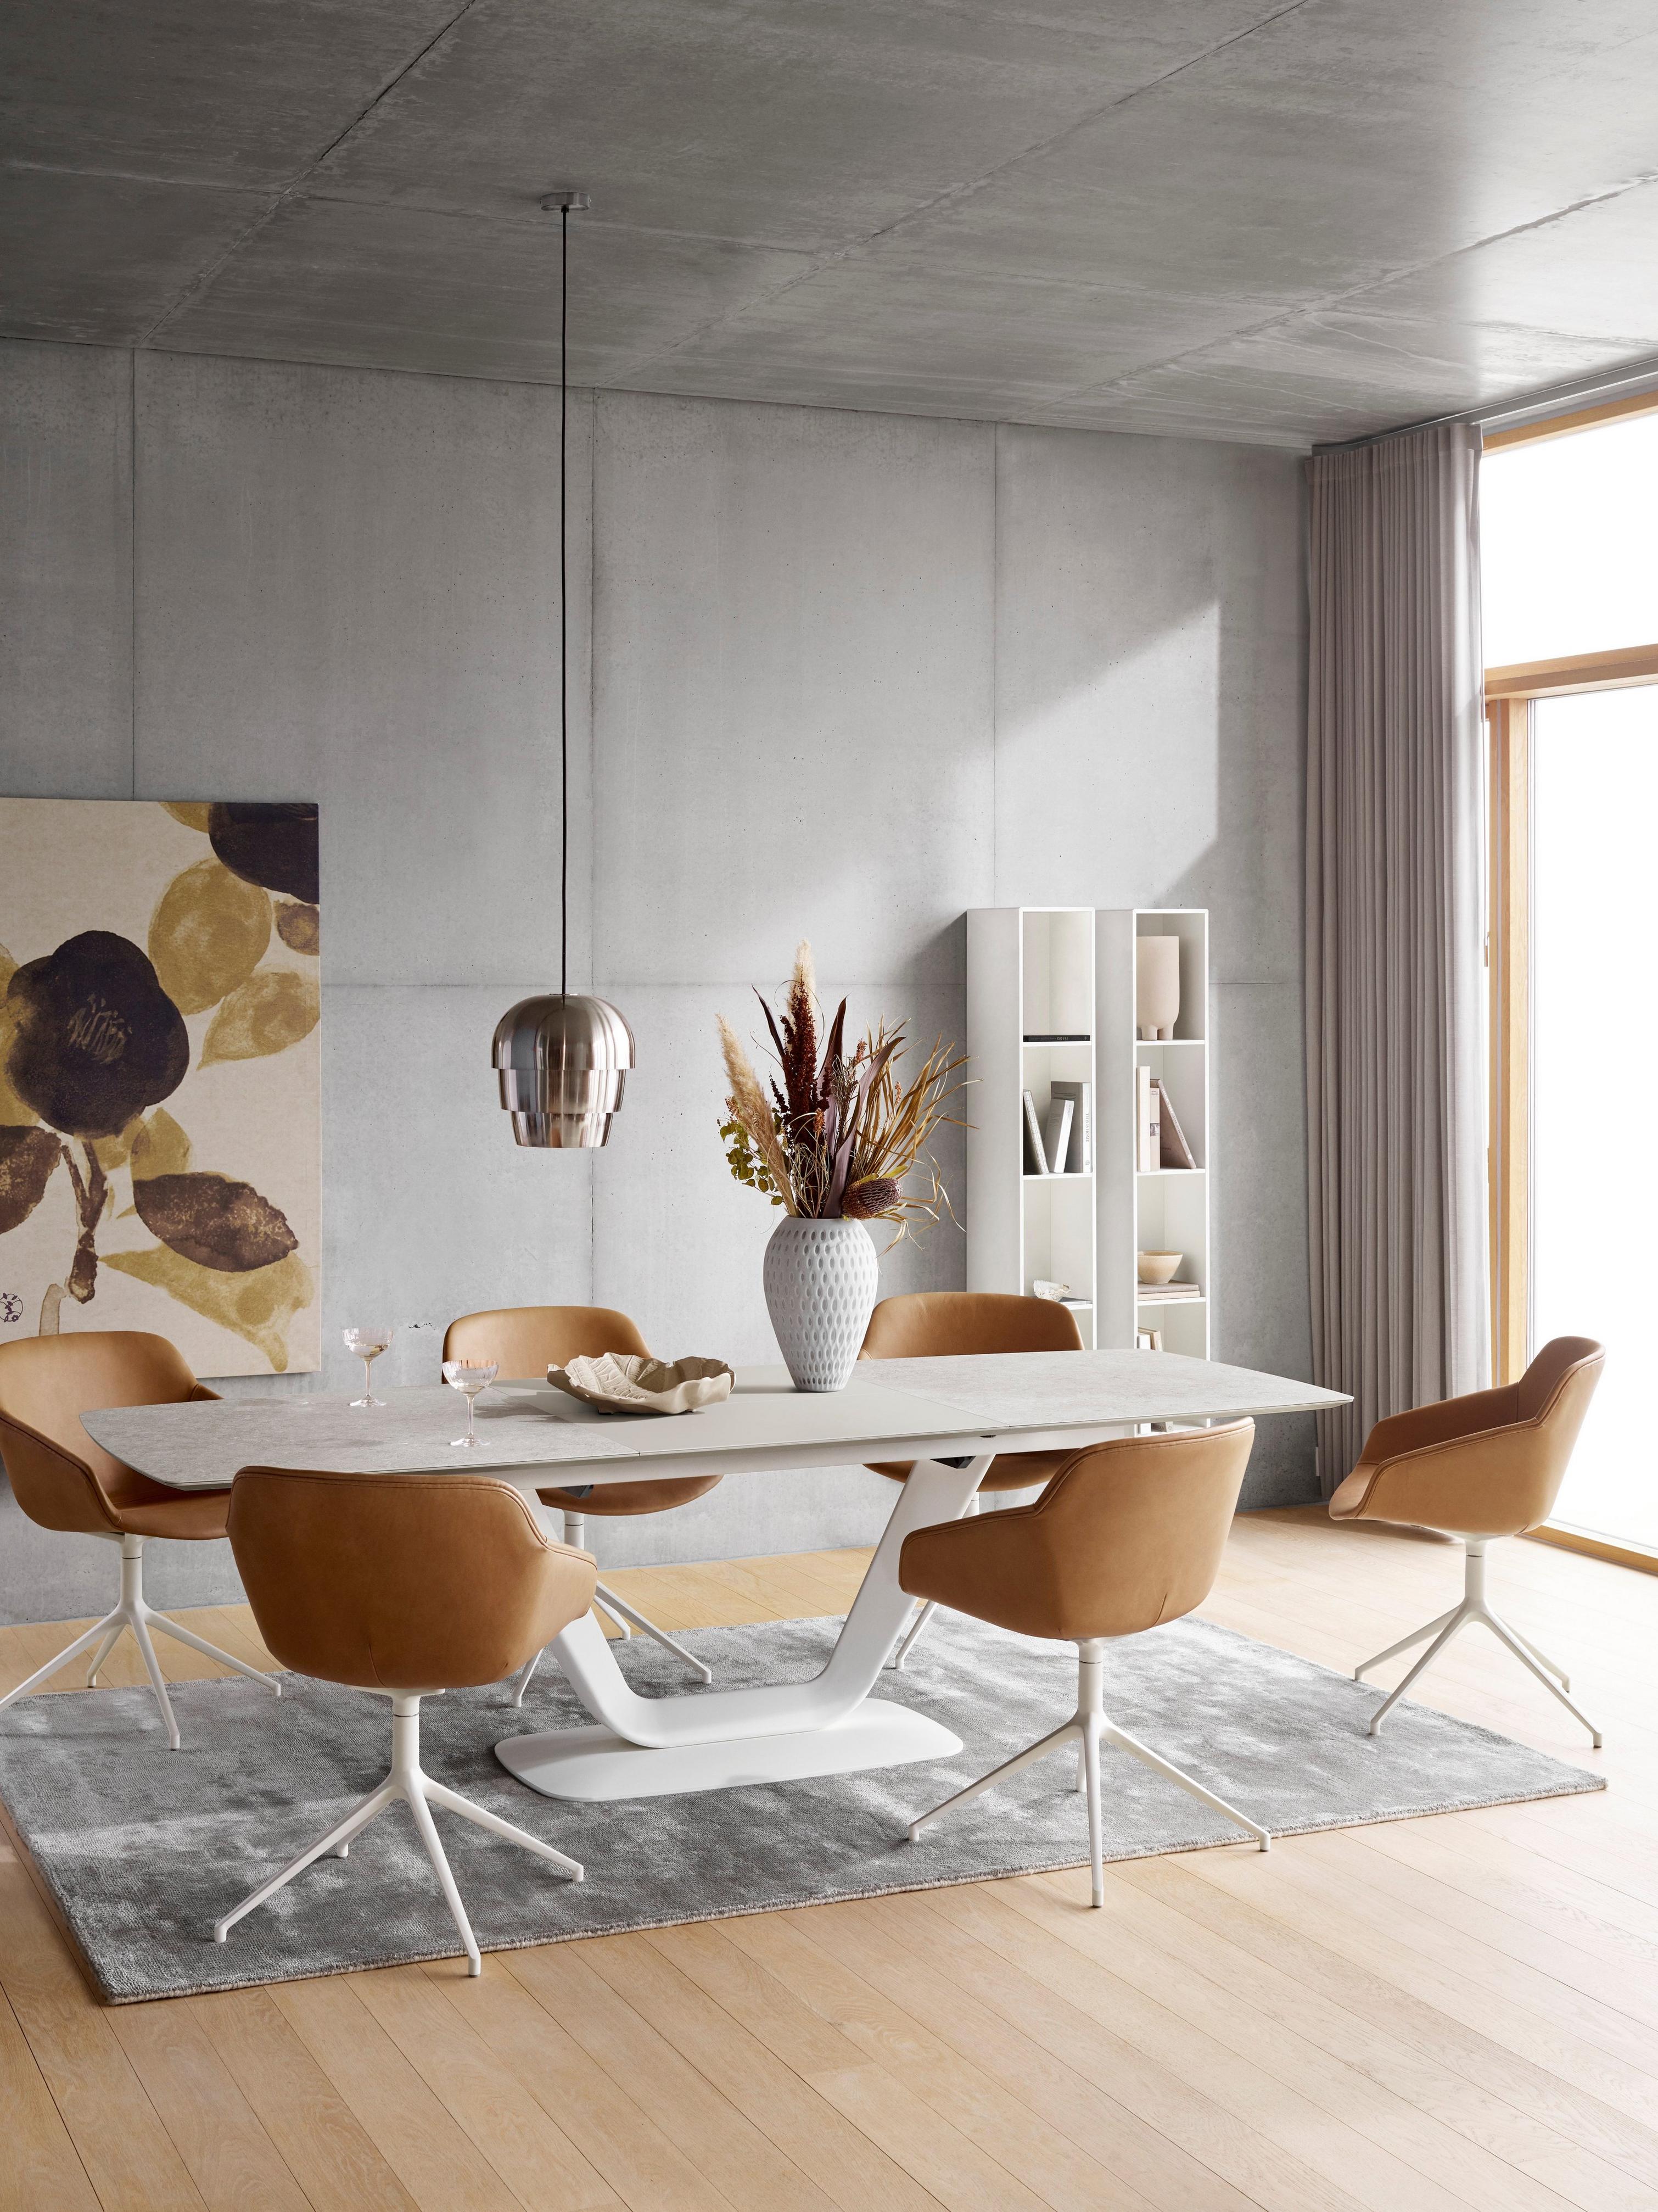 Wohnzimmer mit braunen Stühlen, weißem Tisch, Pendelleuchte und grauem Teppich, mit Kunstobjekt und Regalen.